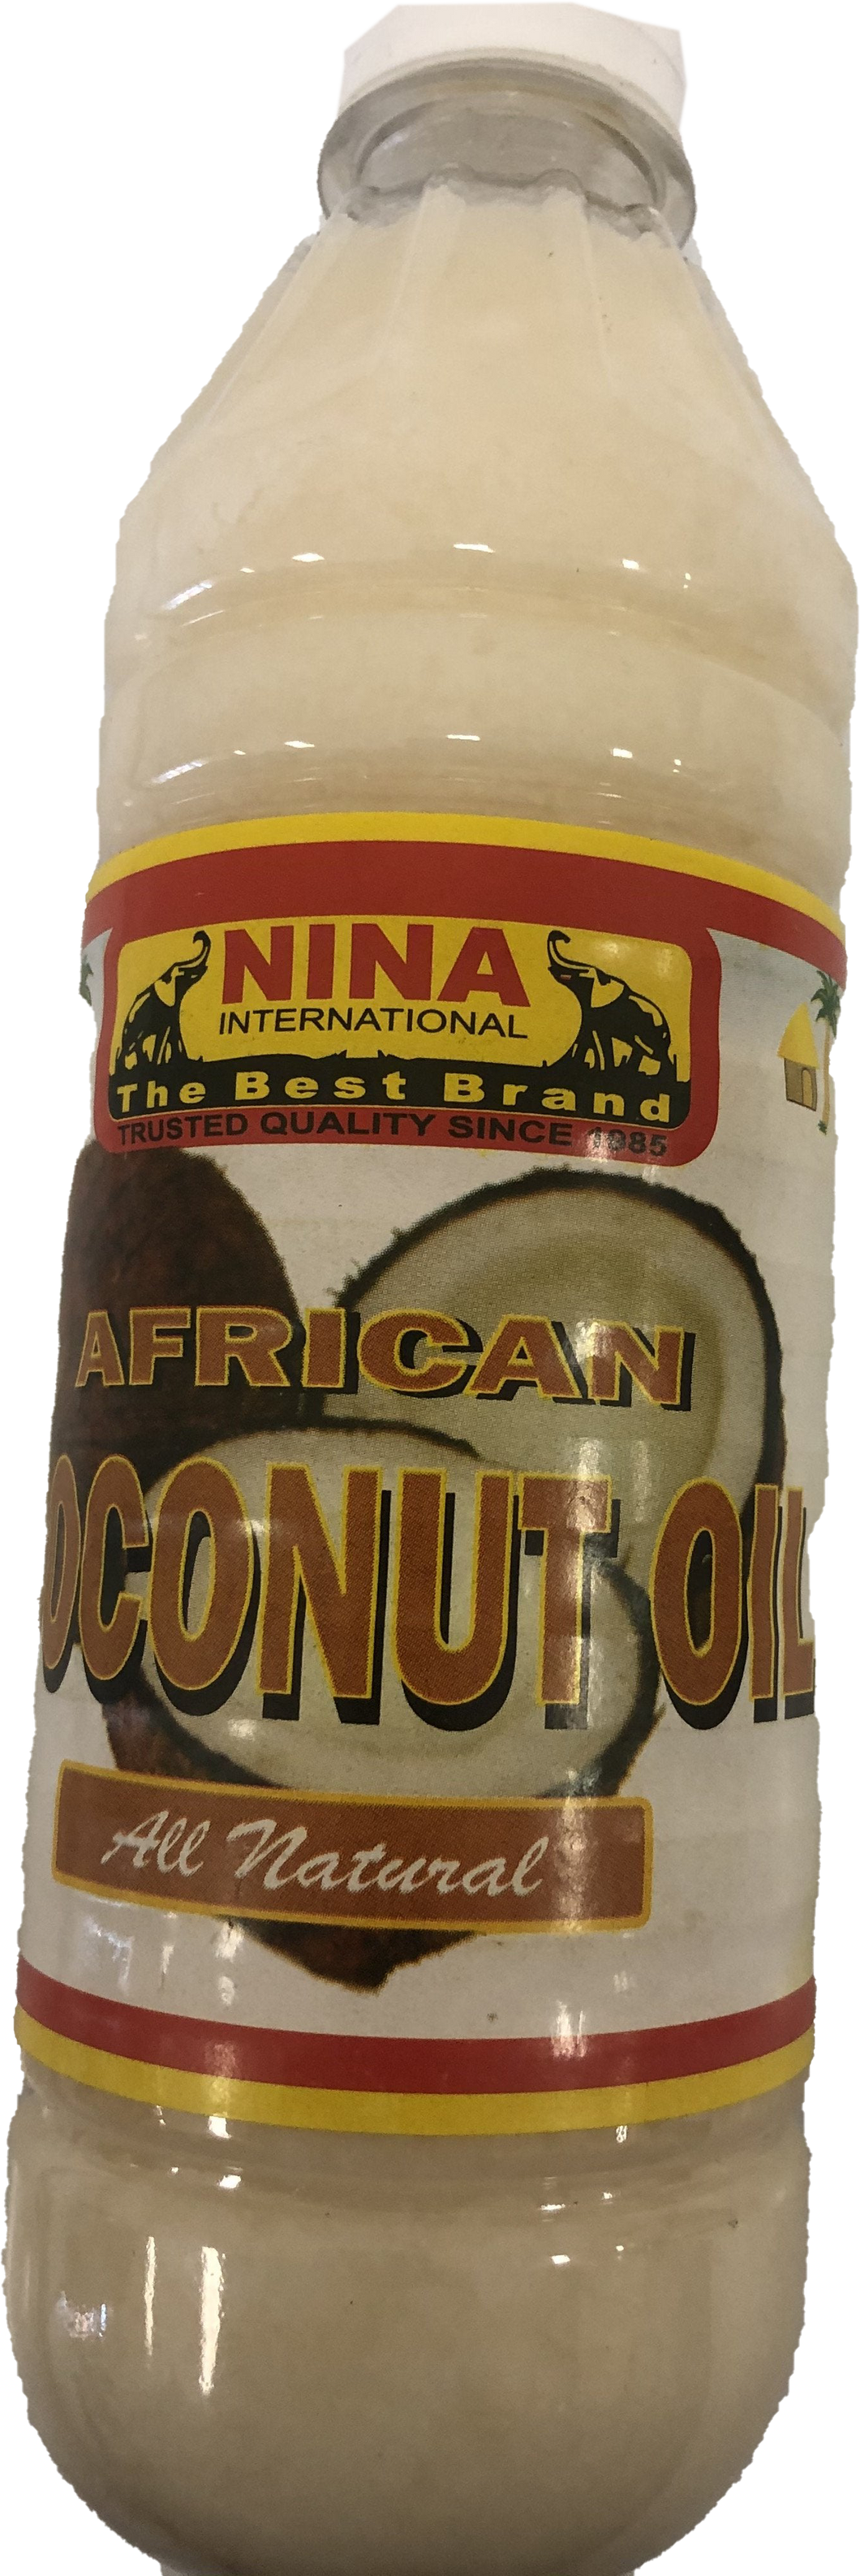 Nina Coconut Oil